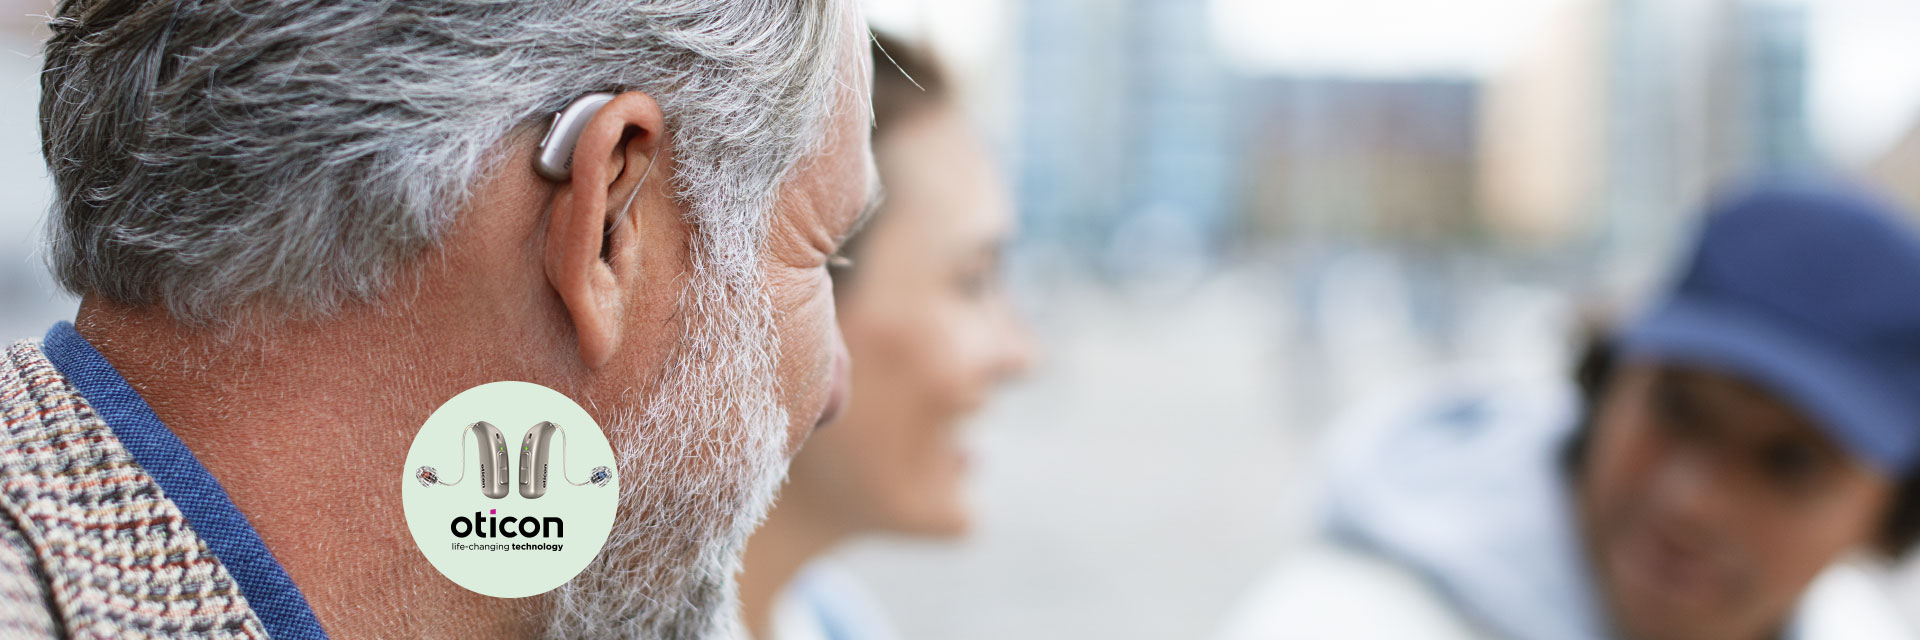 Afbeelding van man met hoorapparaat achter zijn oor